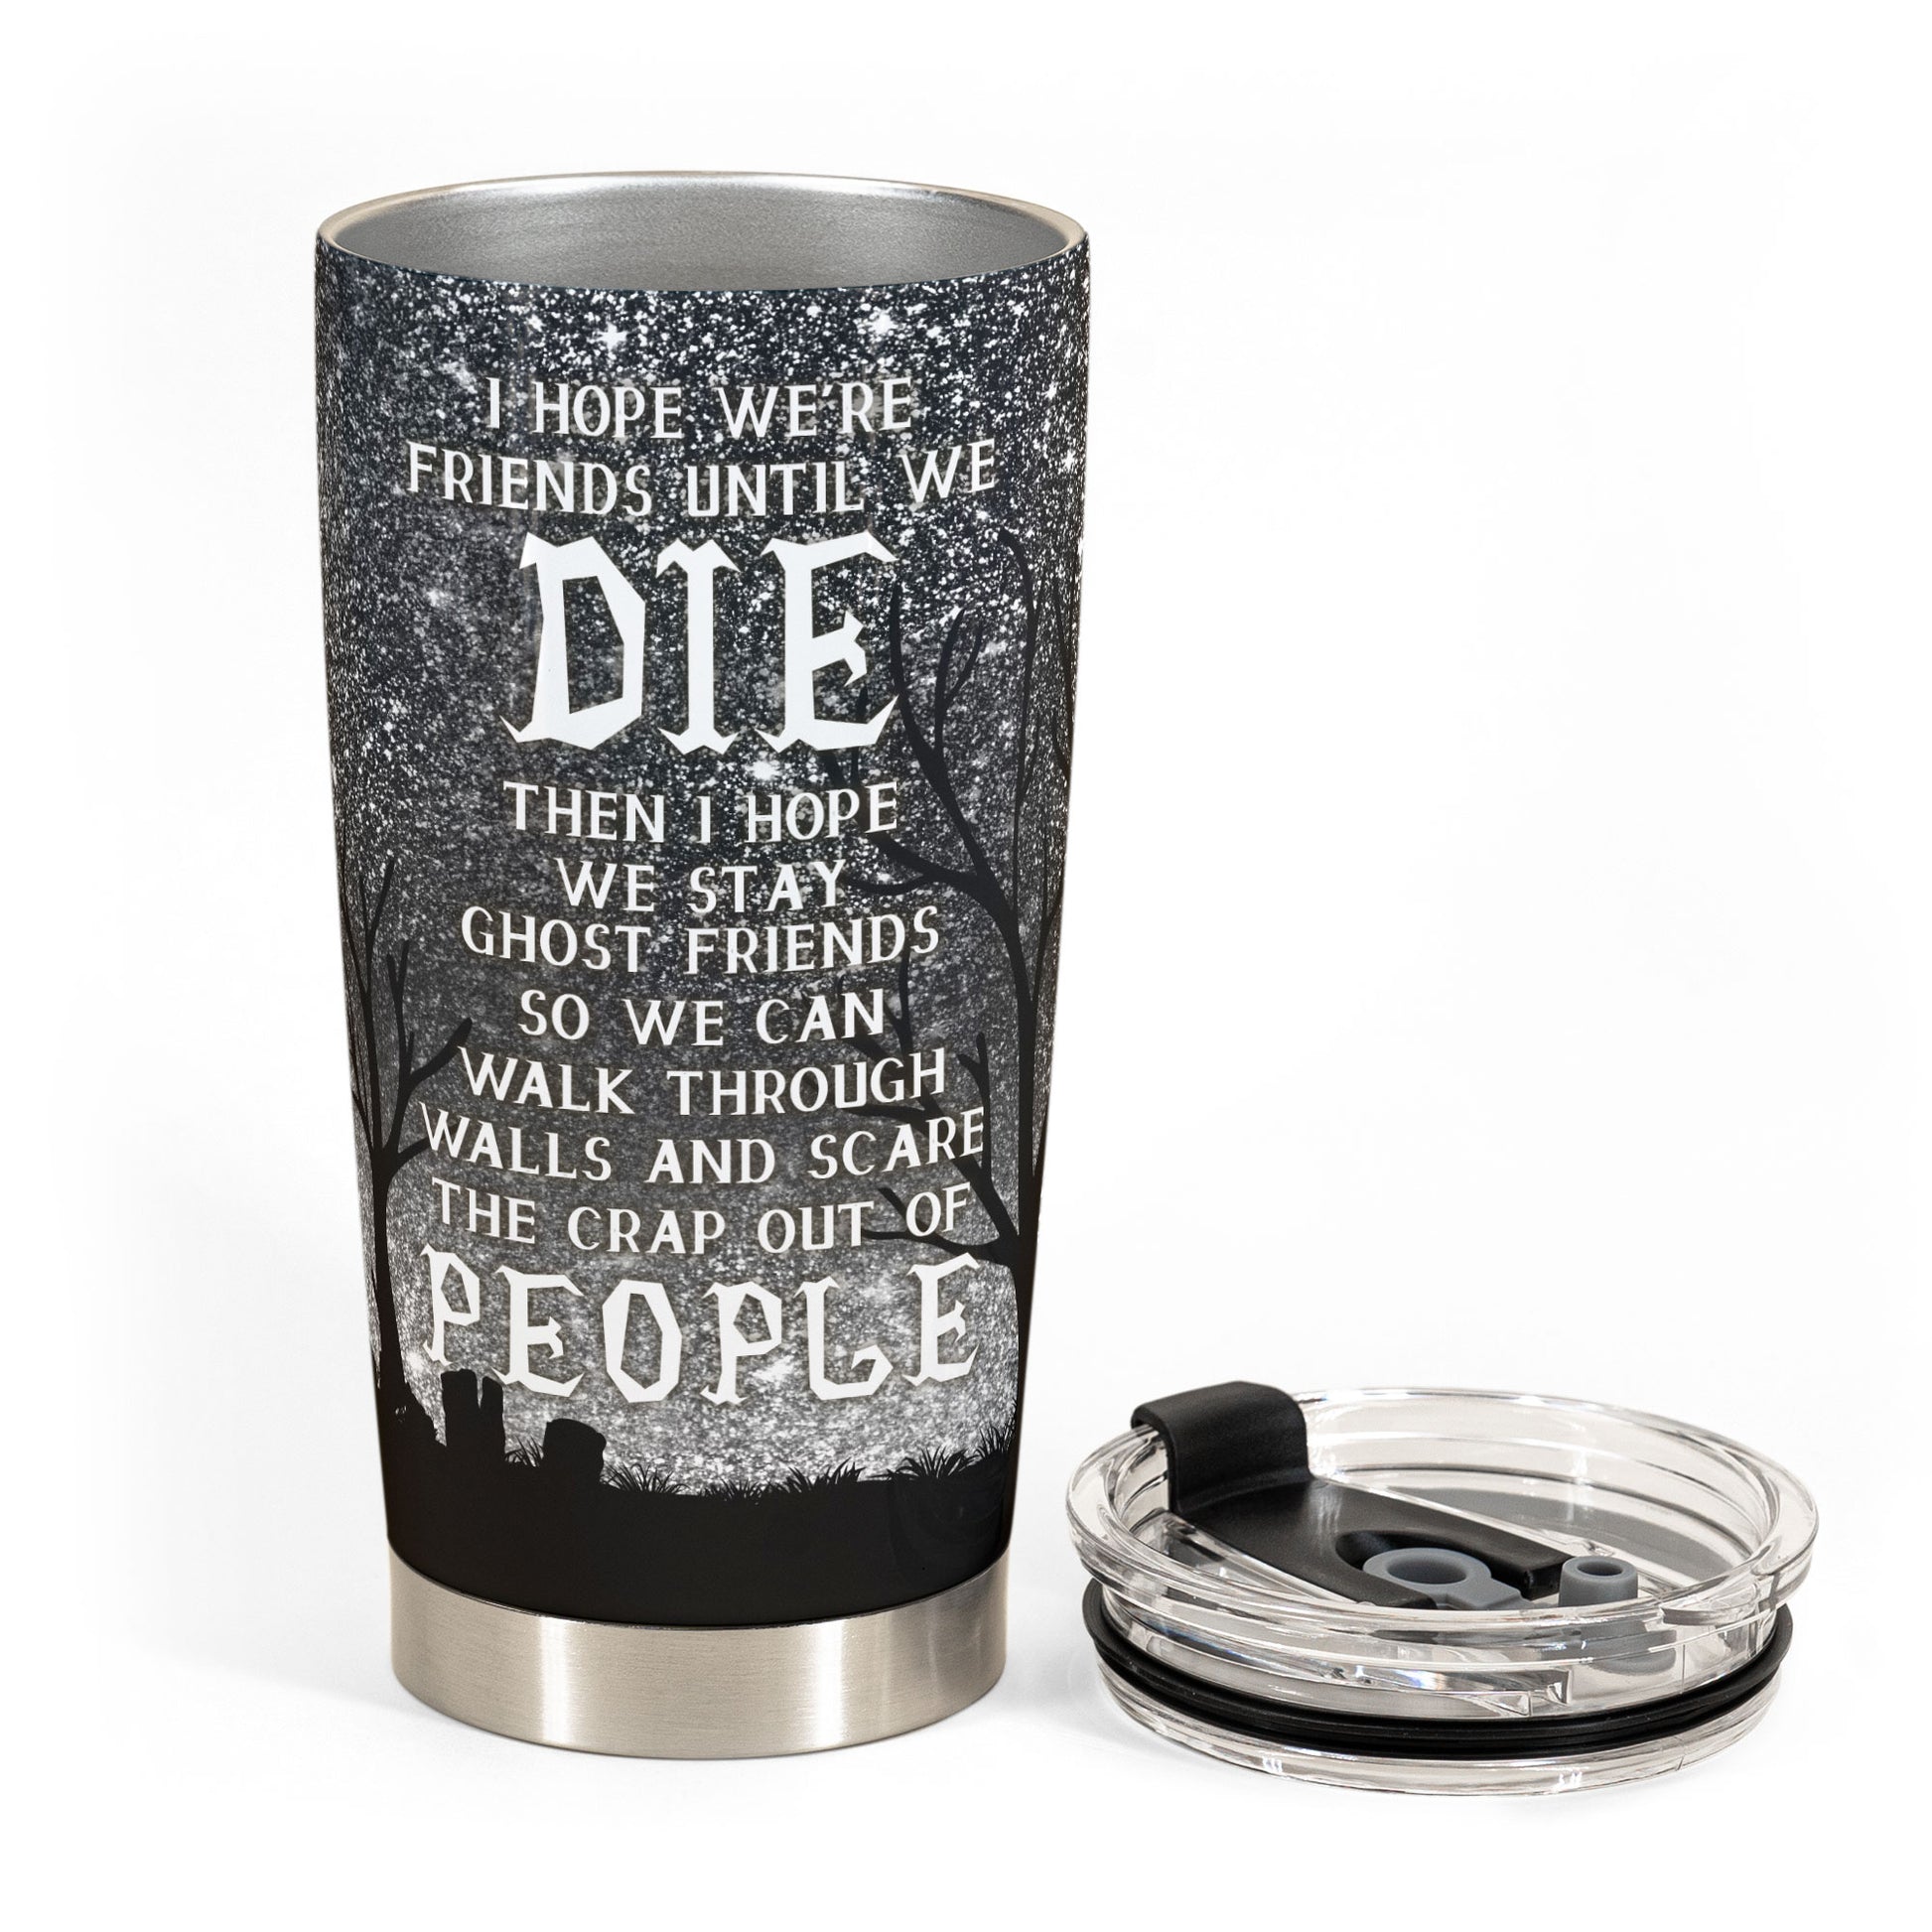 We're Friends Until We Die - Personalized Tumbler Cup - Halloween Gift For Besties - Devil Girls